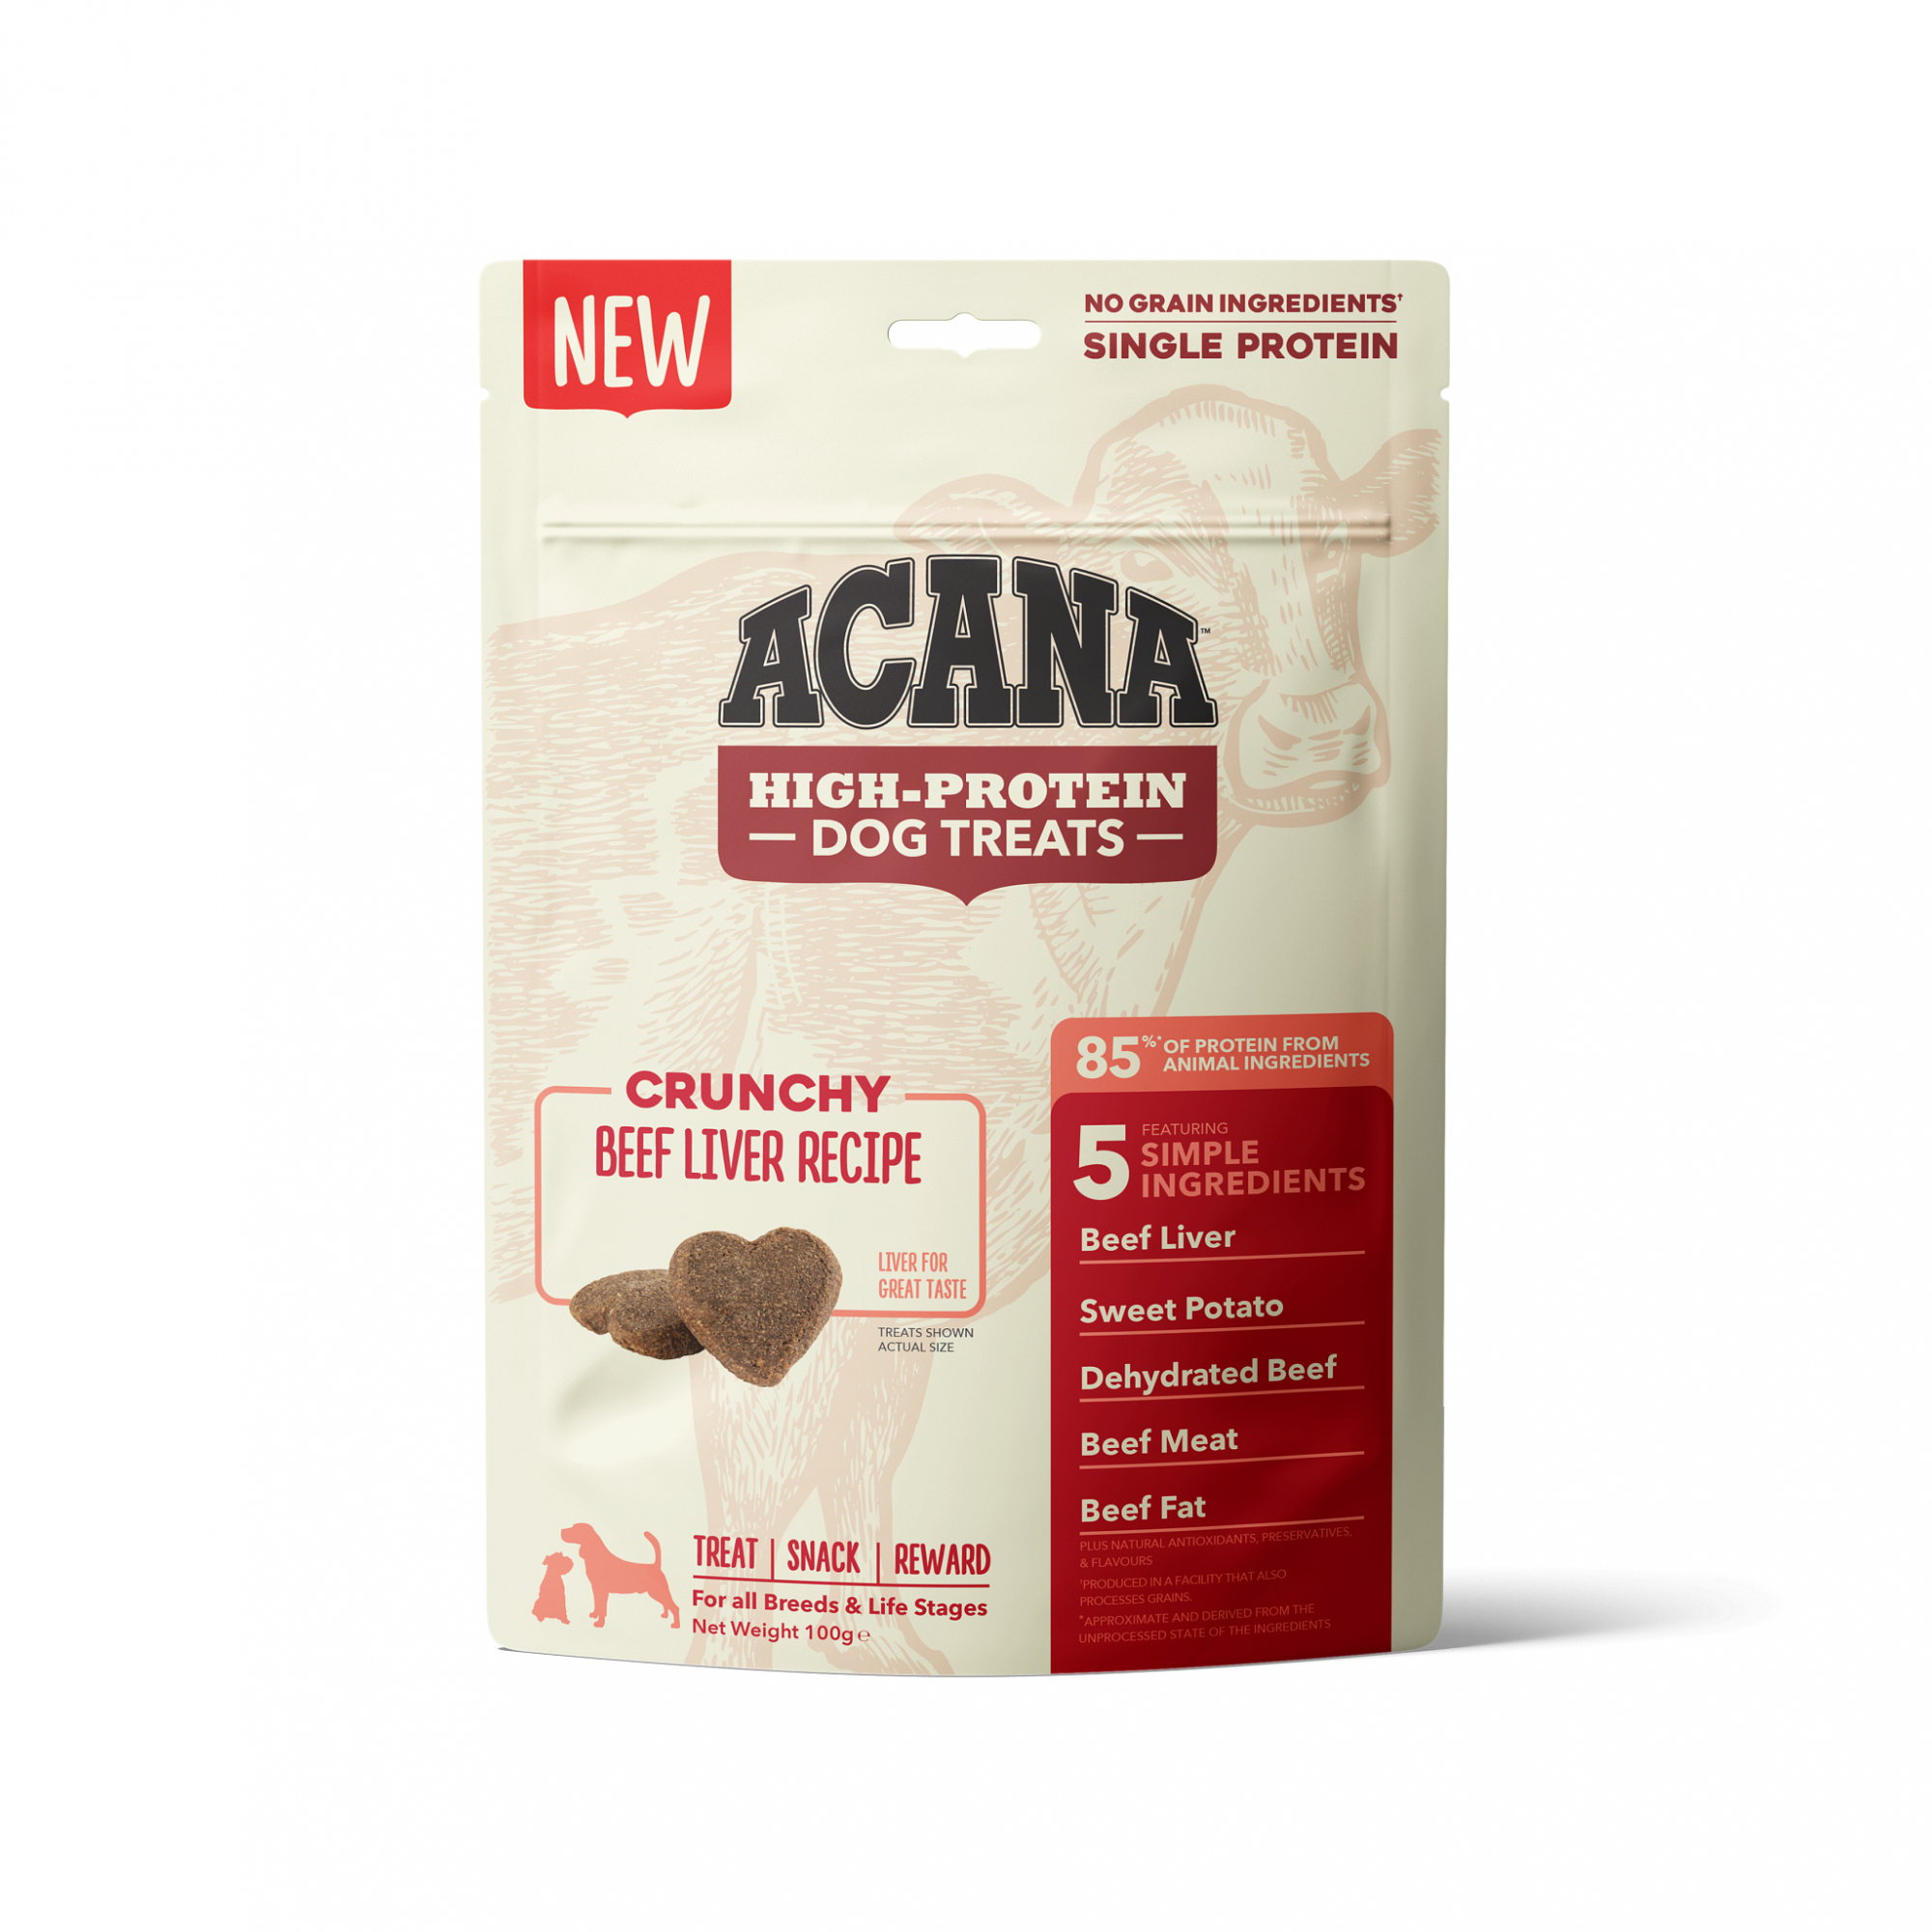 ACANA High-Protein Galletas crujientes para perros - 4 sabores disponibles